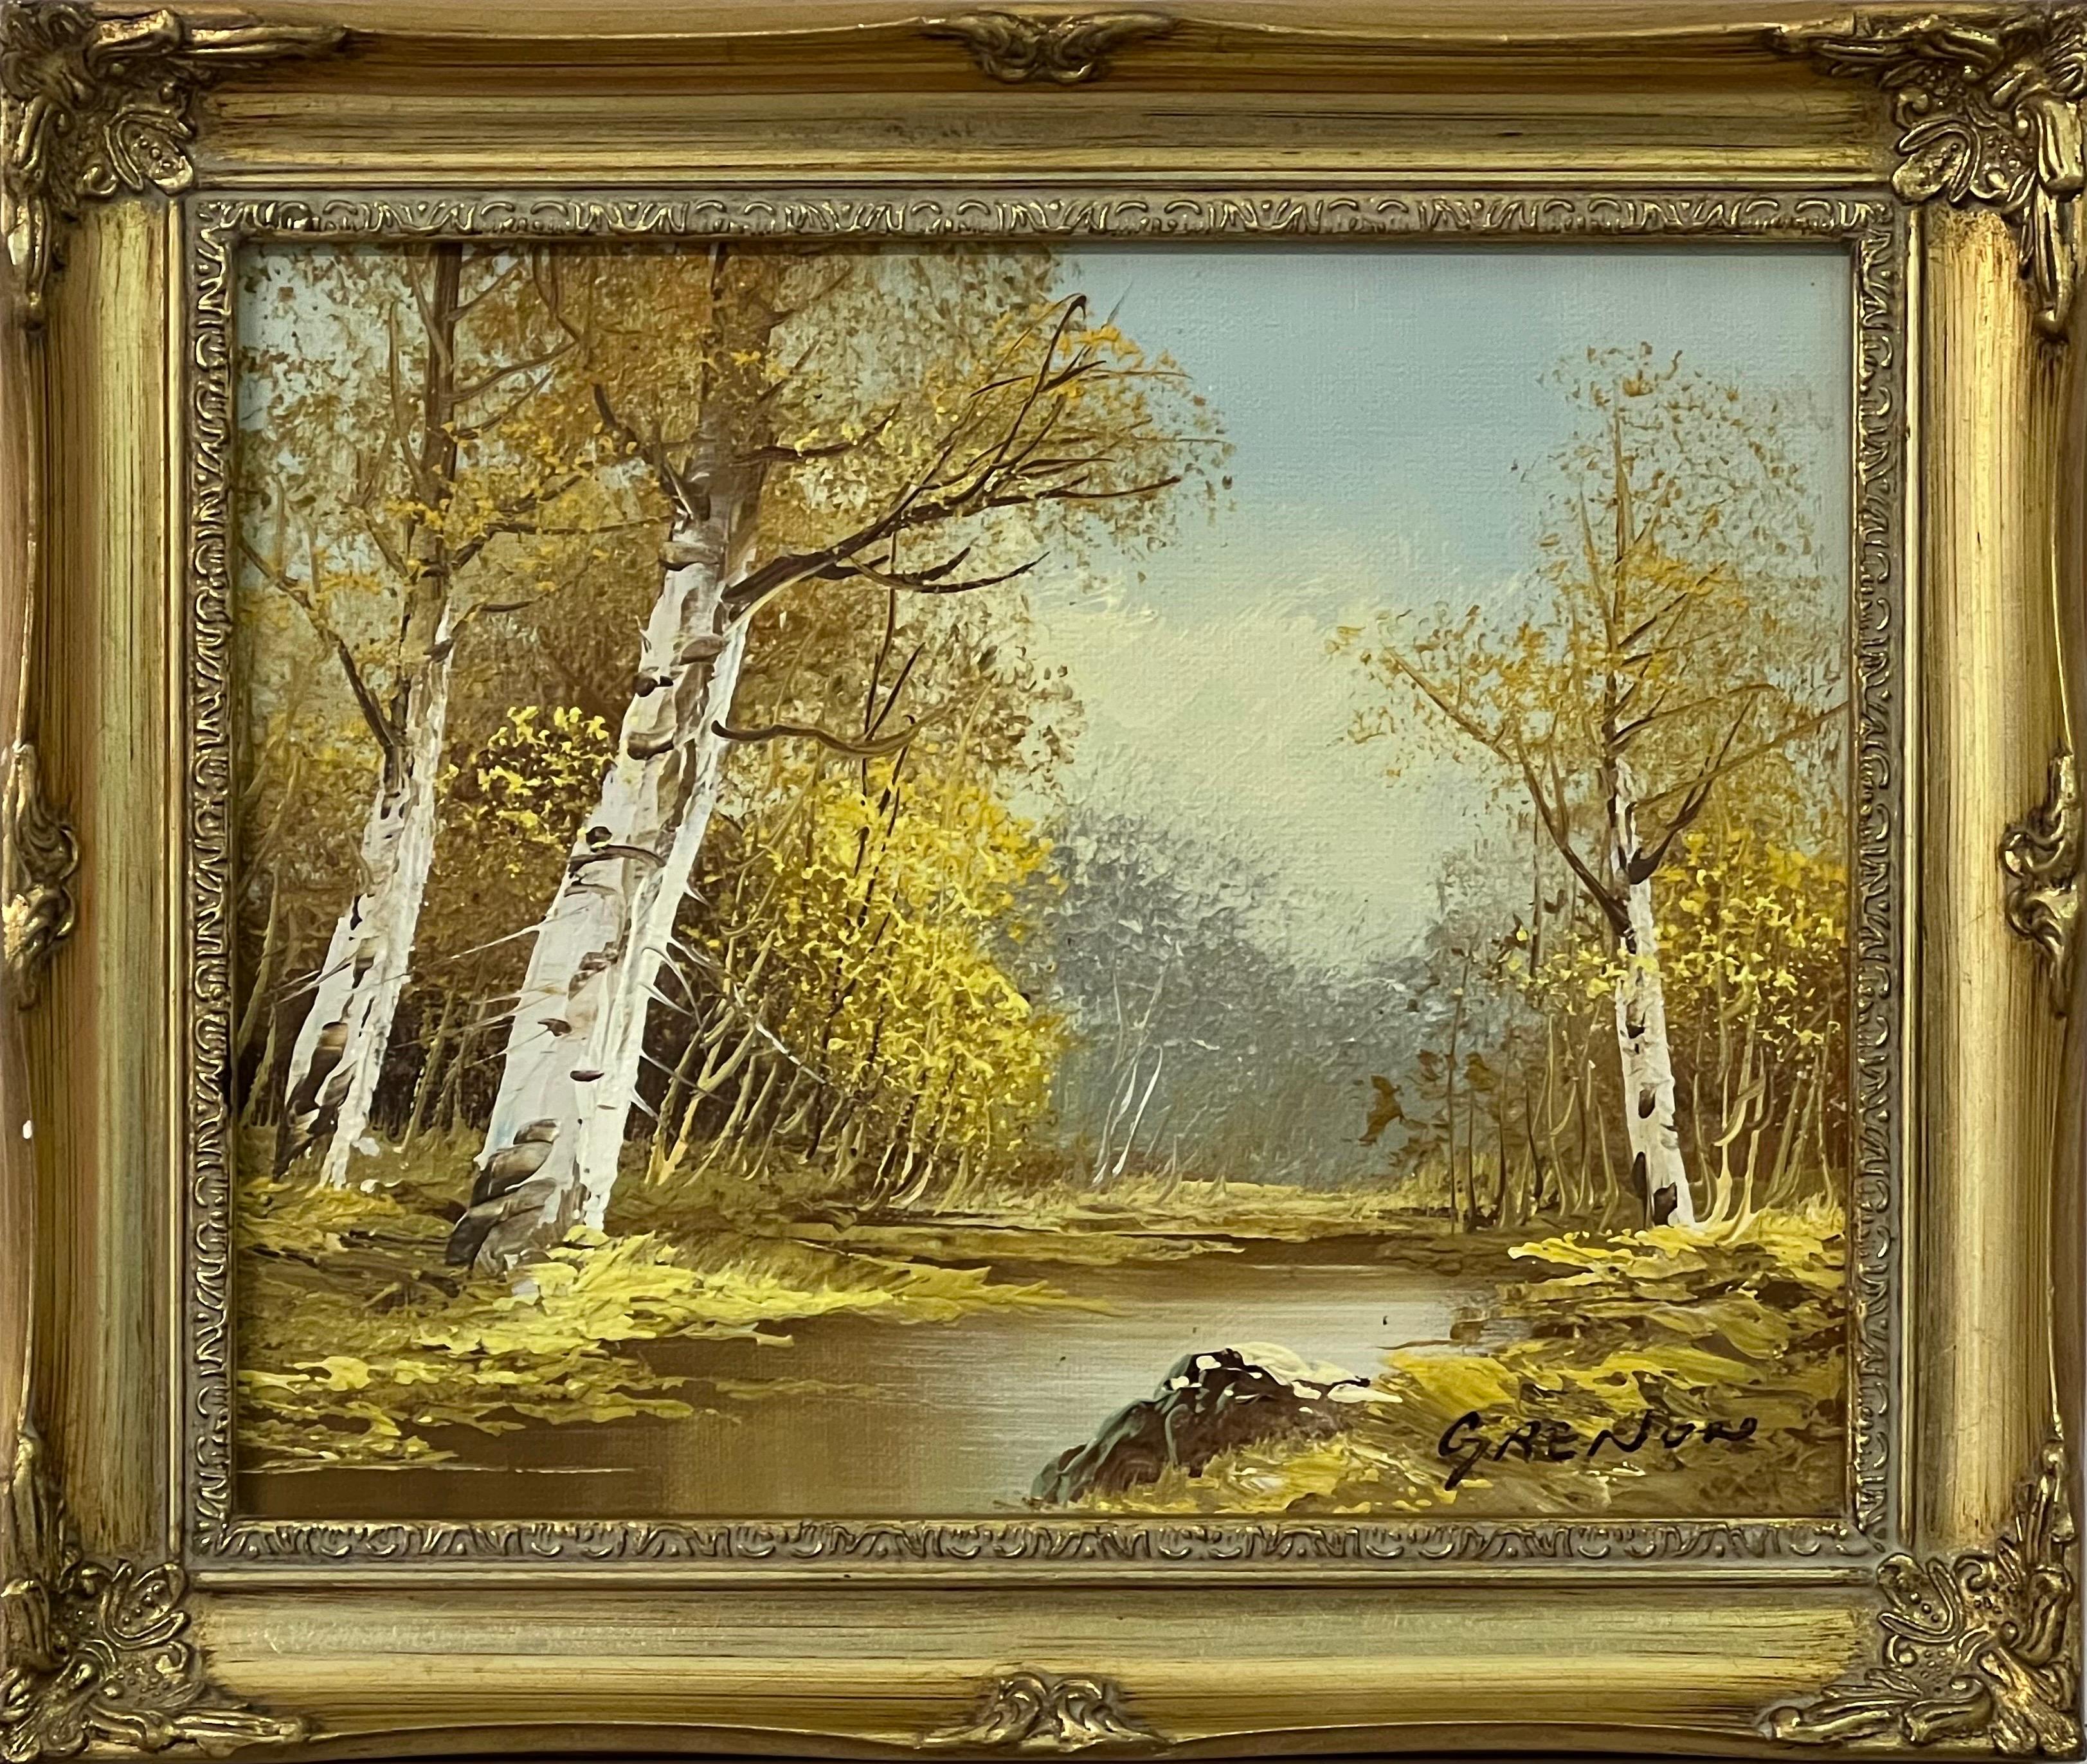 Figurative Painting Grenon - Peinture à l'huile vintage du 20e siècle représentant un paysage fluvial avec des arbres de bouleau argenté